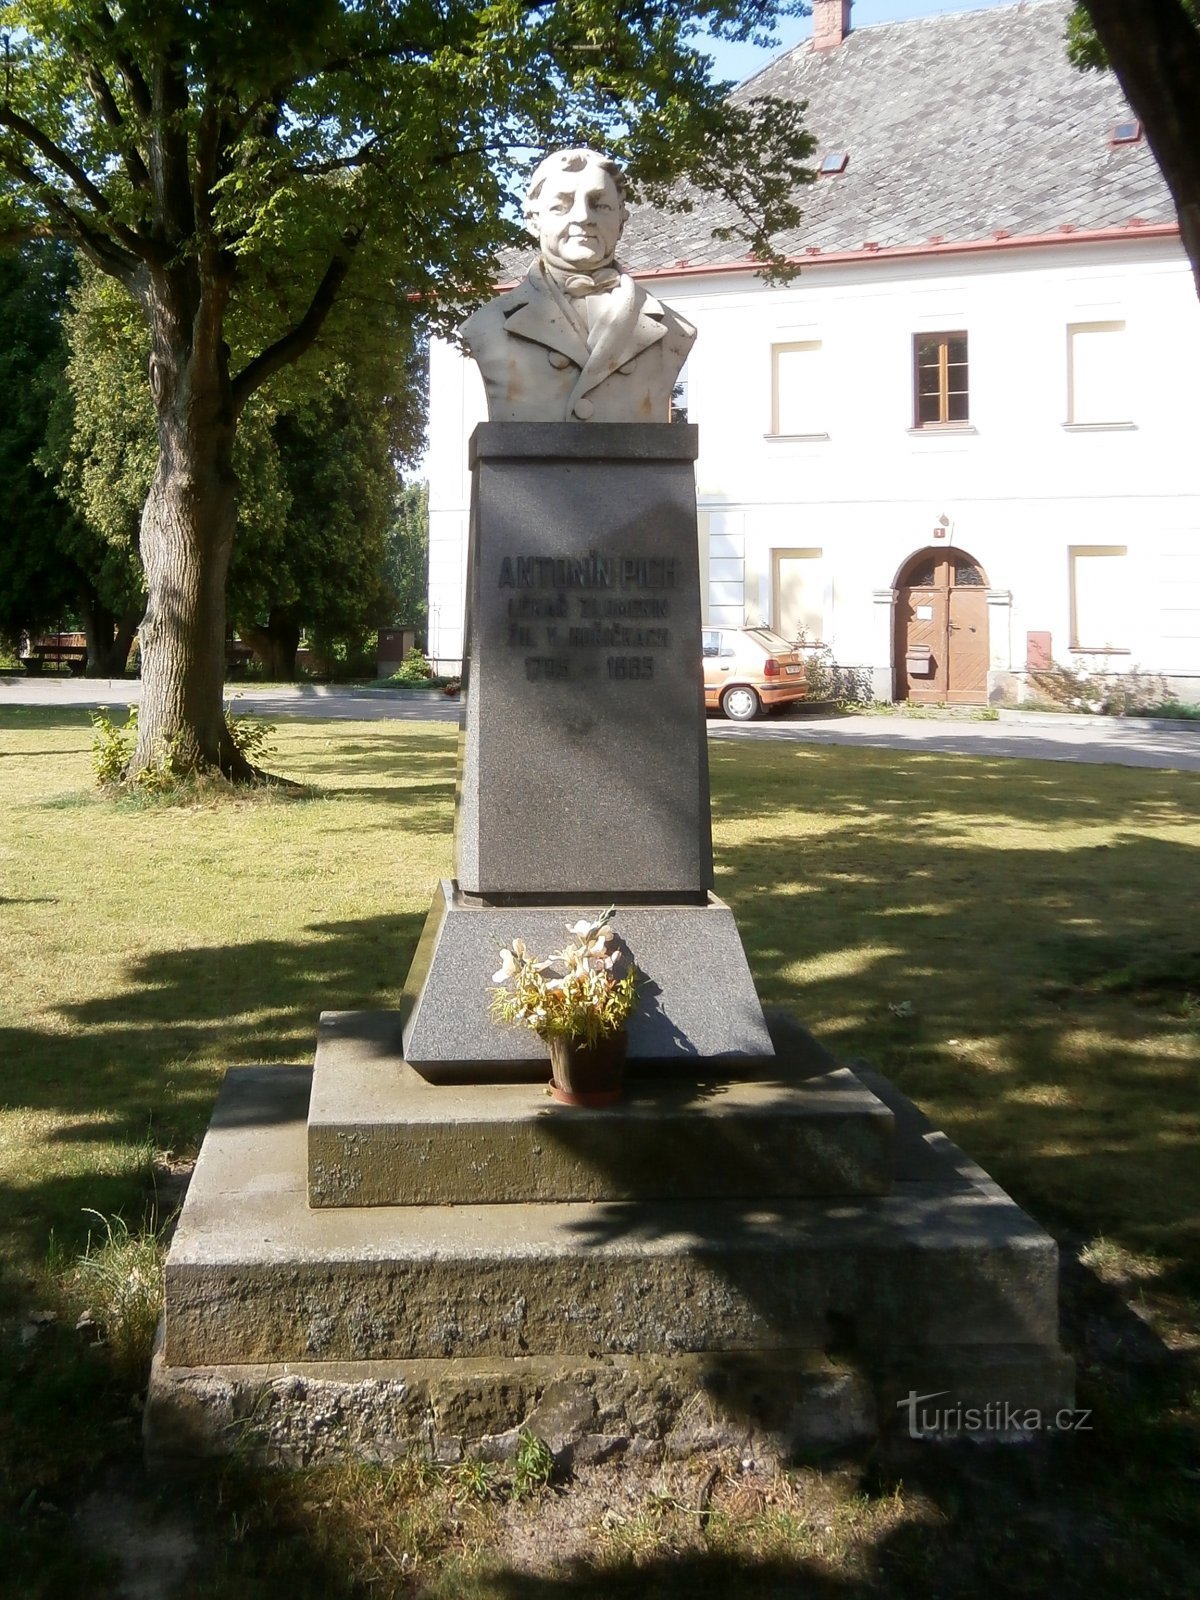 Denkmal für Antonín Picha (Hořičky, 5.7.2017. Oktober XNUMX)